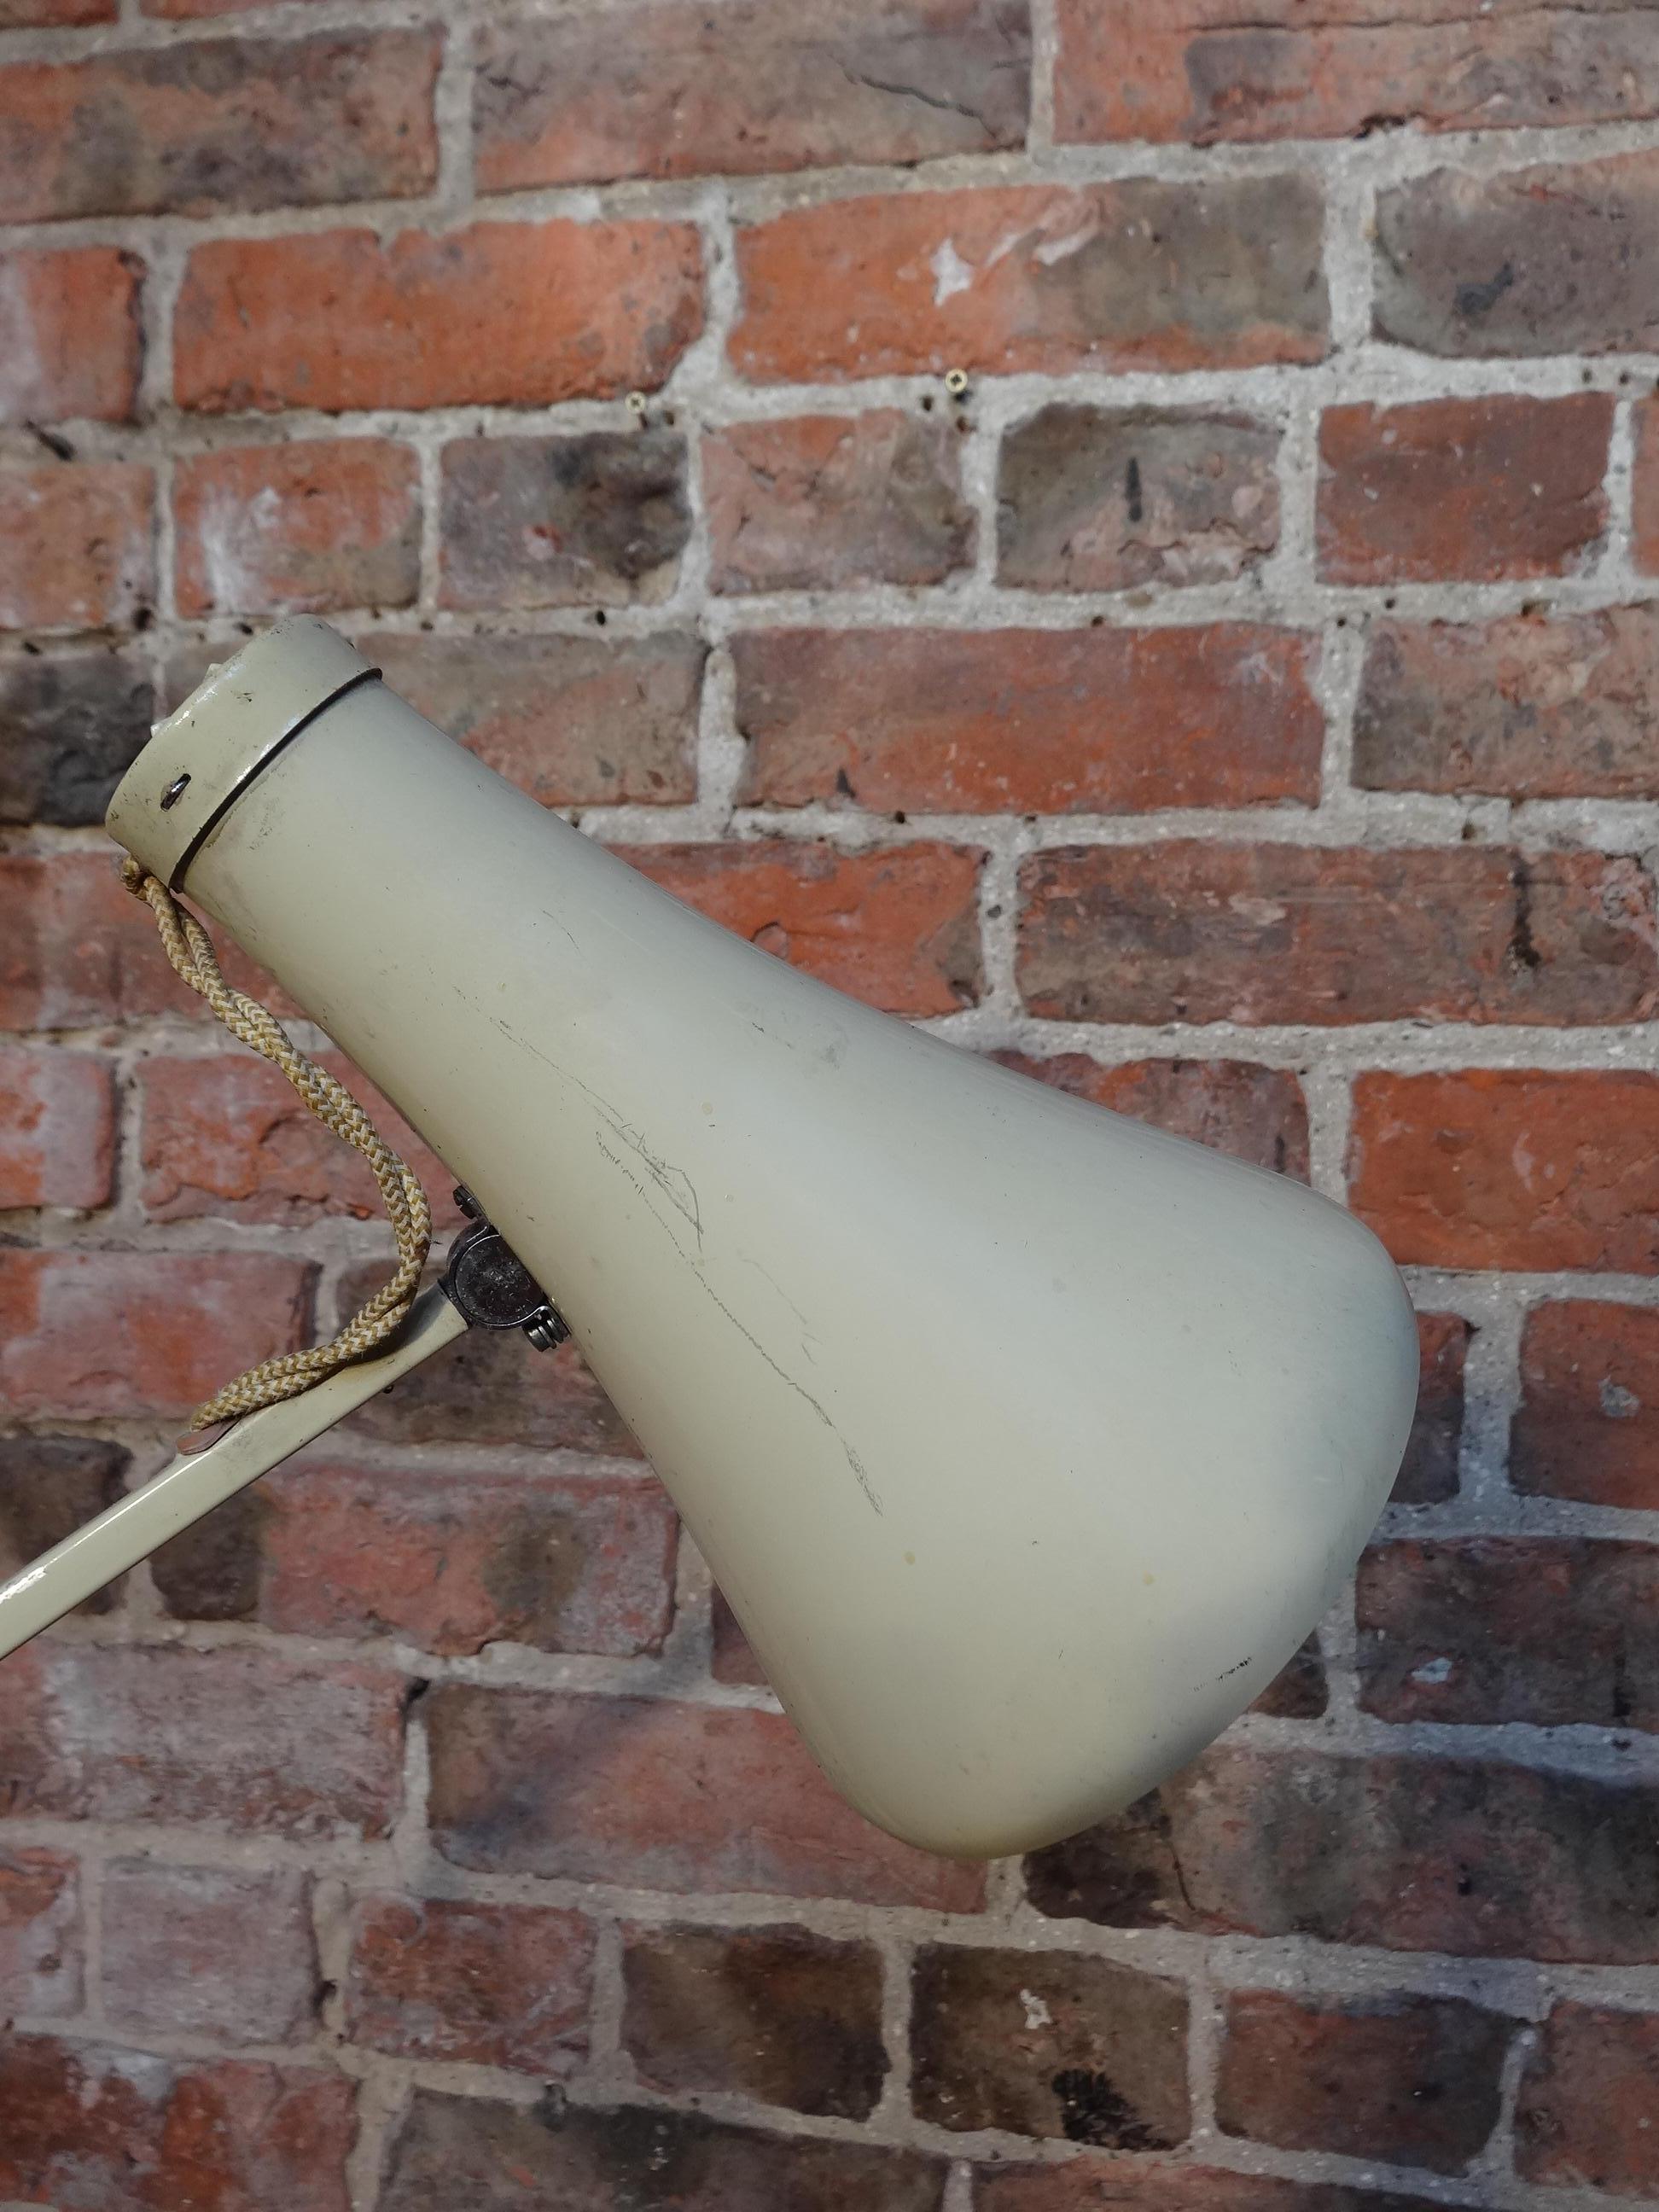 Graue Anglepoise-Lampe, entworfen von George Carwardine für Herbert Terry.

Maße: H 71cm, T 15cm, B 30cm.